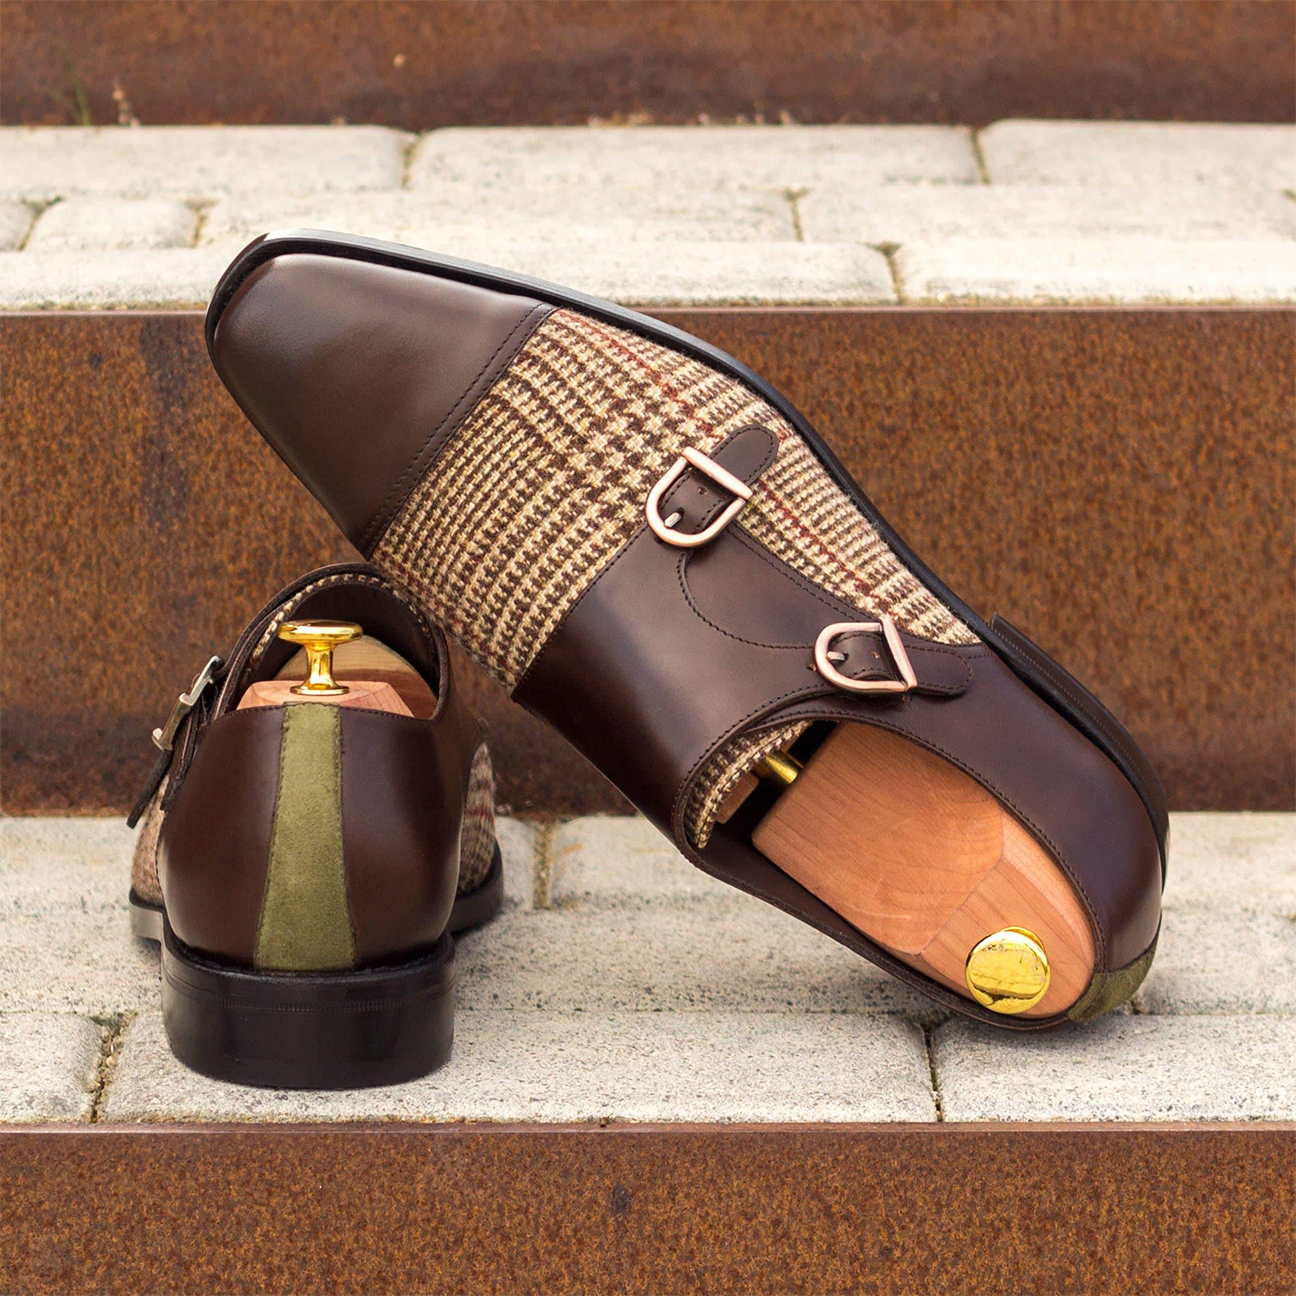 Aristocrat Adorn Double Monk Shoes